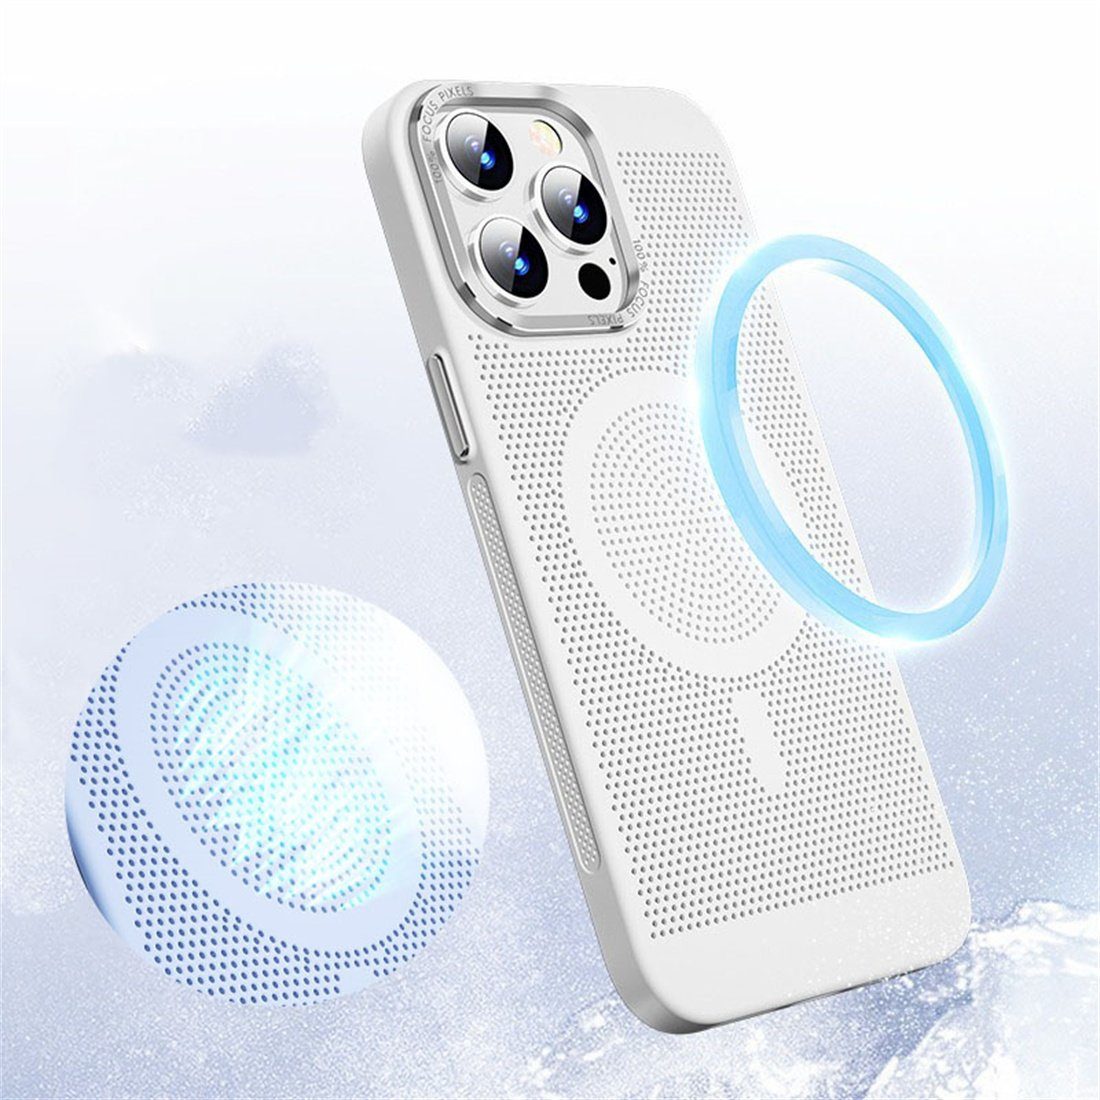 Weiß 14 DÖRÖY Handy-Hüllen Plus,Wärmeschutzhülle,Magnetische Handytasche Für iPhone Saughülle